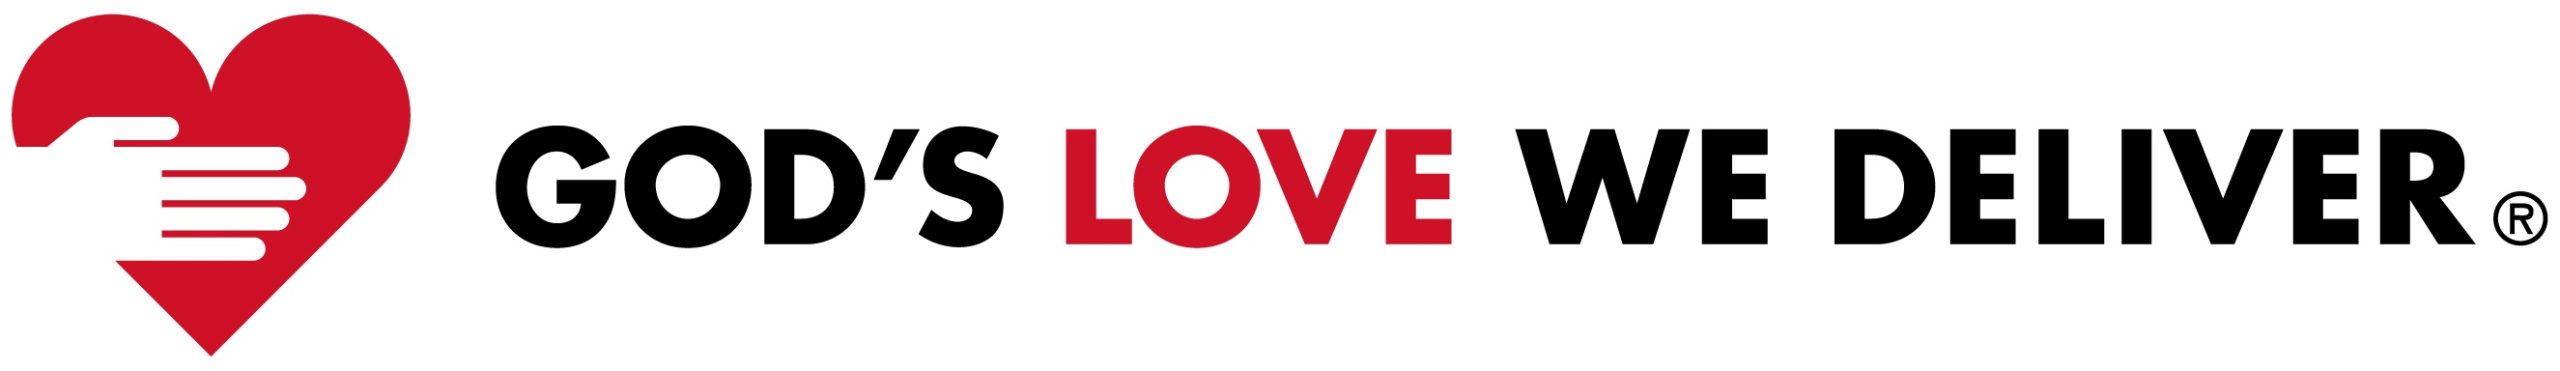 Gods love we deliver logo